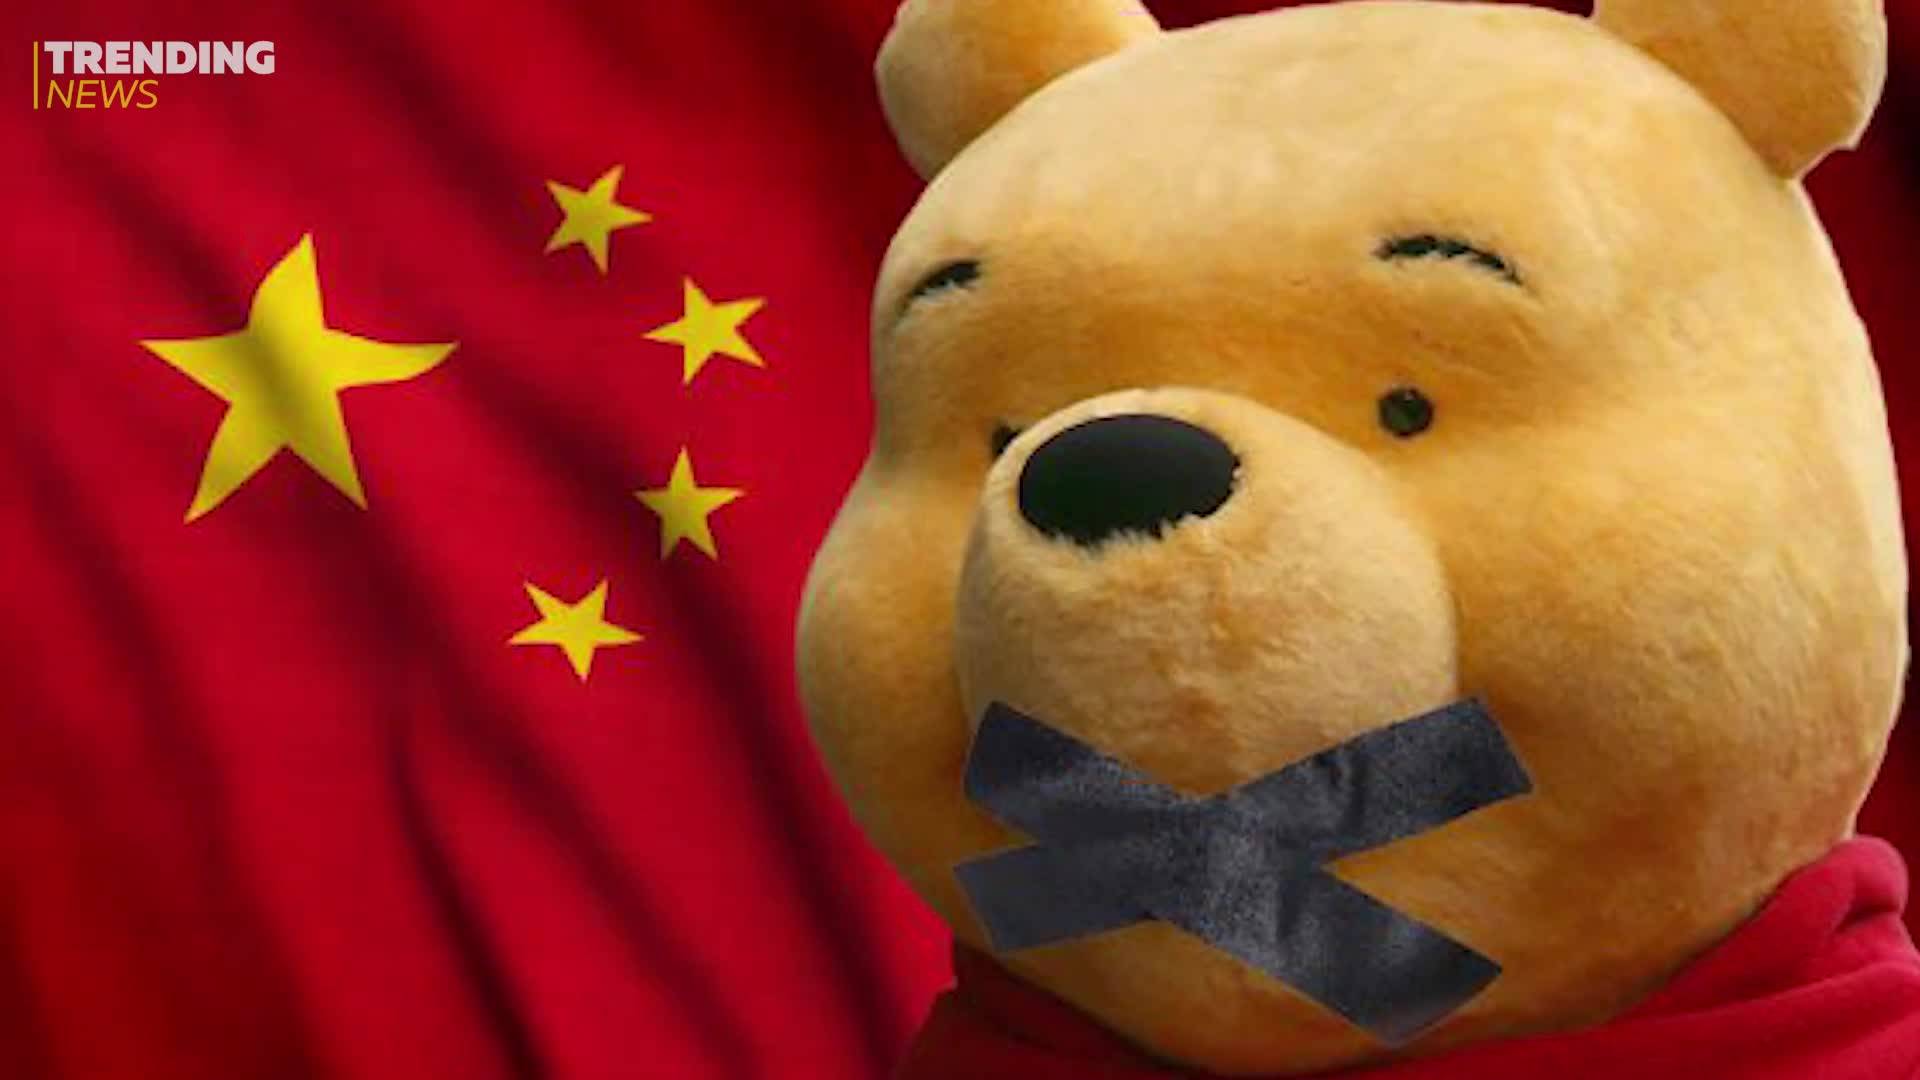 Властите в Китай забраниха новия филм за Мечо Пух